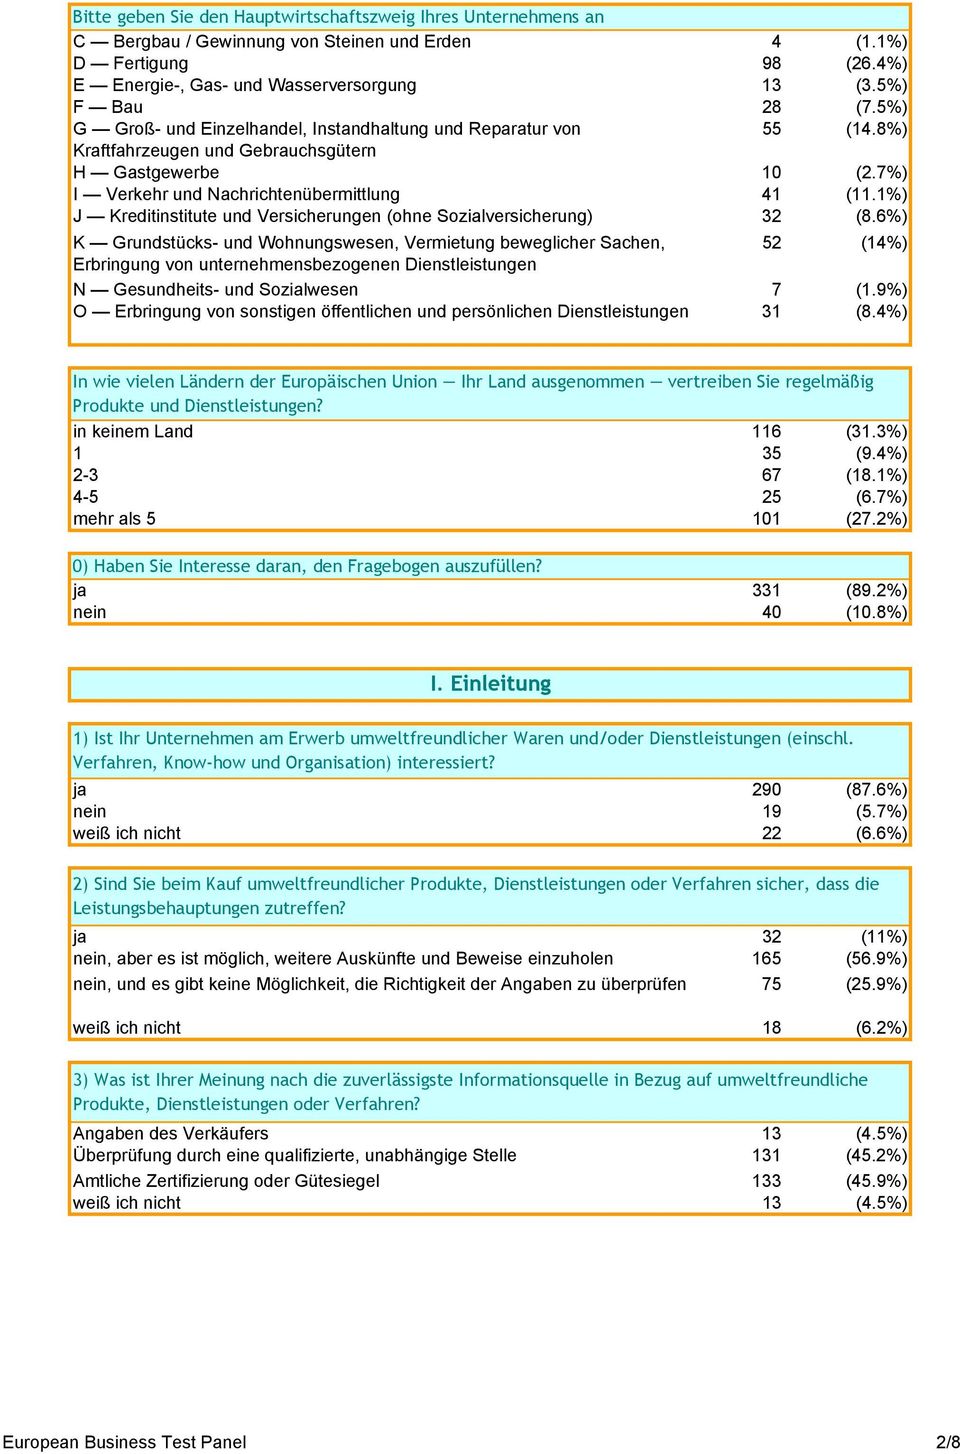 1%) J Kreditinstitute und Versicherungen (ohne Sozialversicherung) 32 (8.